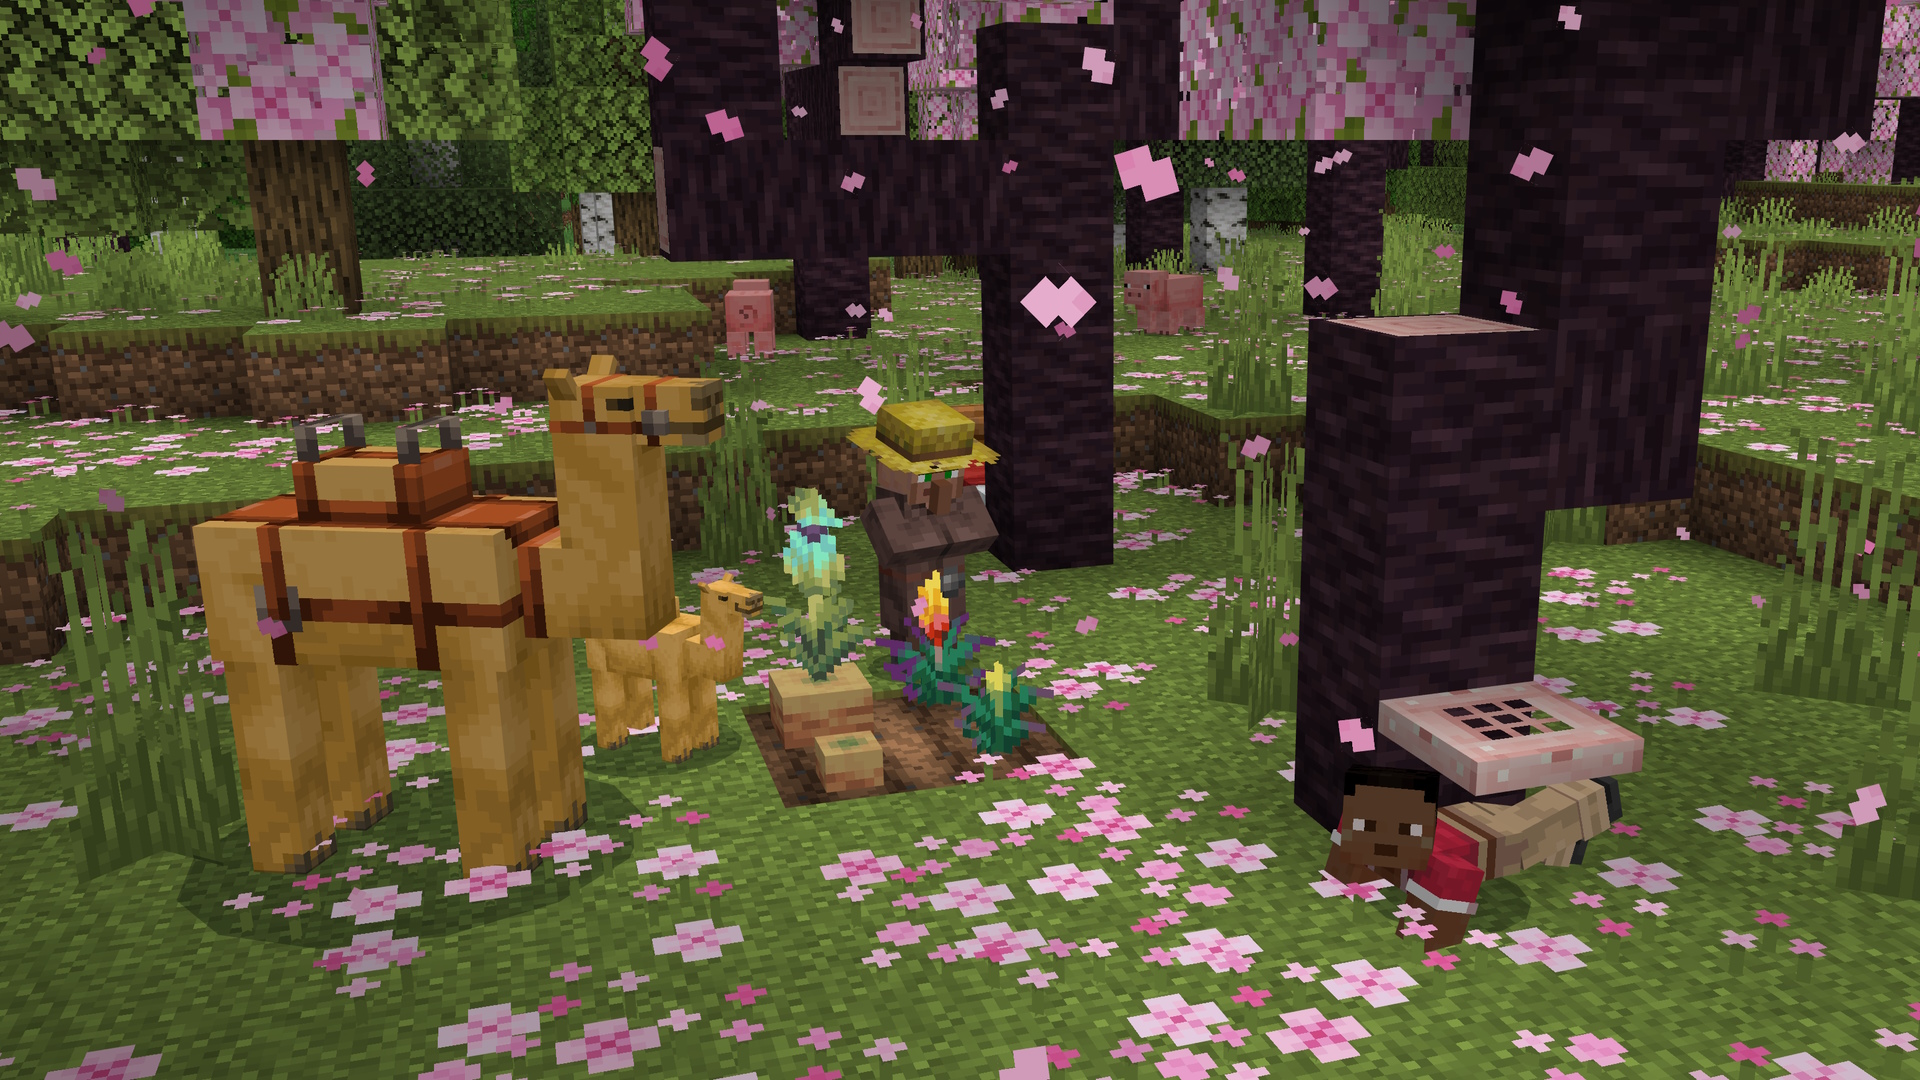 لقطة شاشة من Minecraft تظهر لاعبًا يزحف تحت باب سحري من خشب الكرز في بستان كرز ، مع قروي يقف بالقرب من بعض الزهور المزروعة وزوج من الجمال.